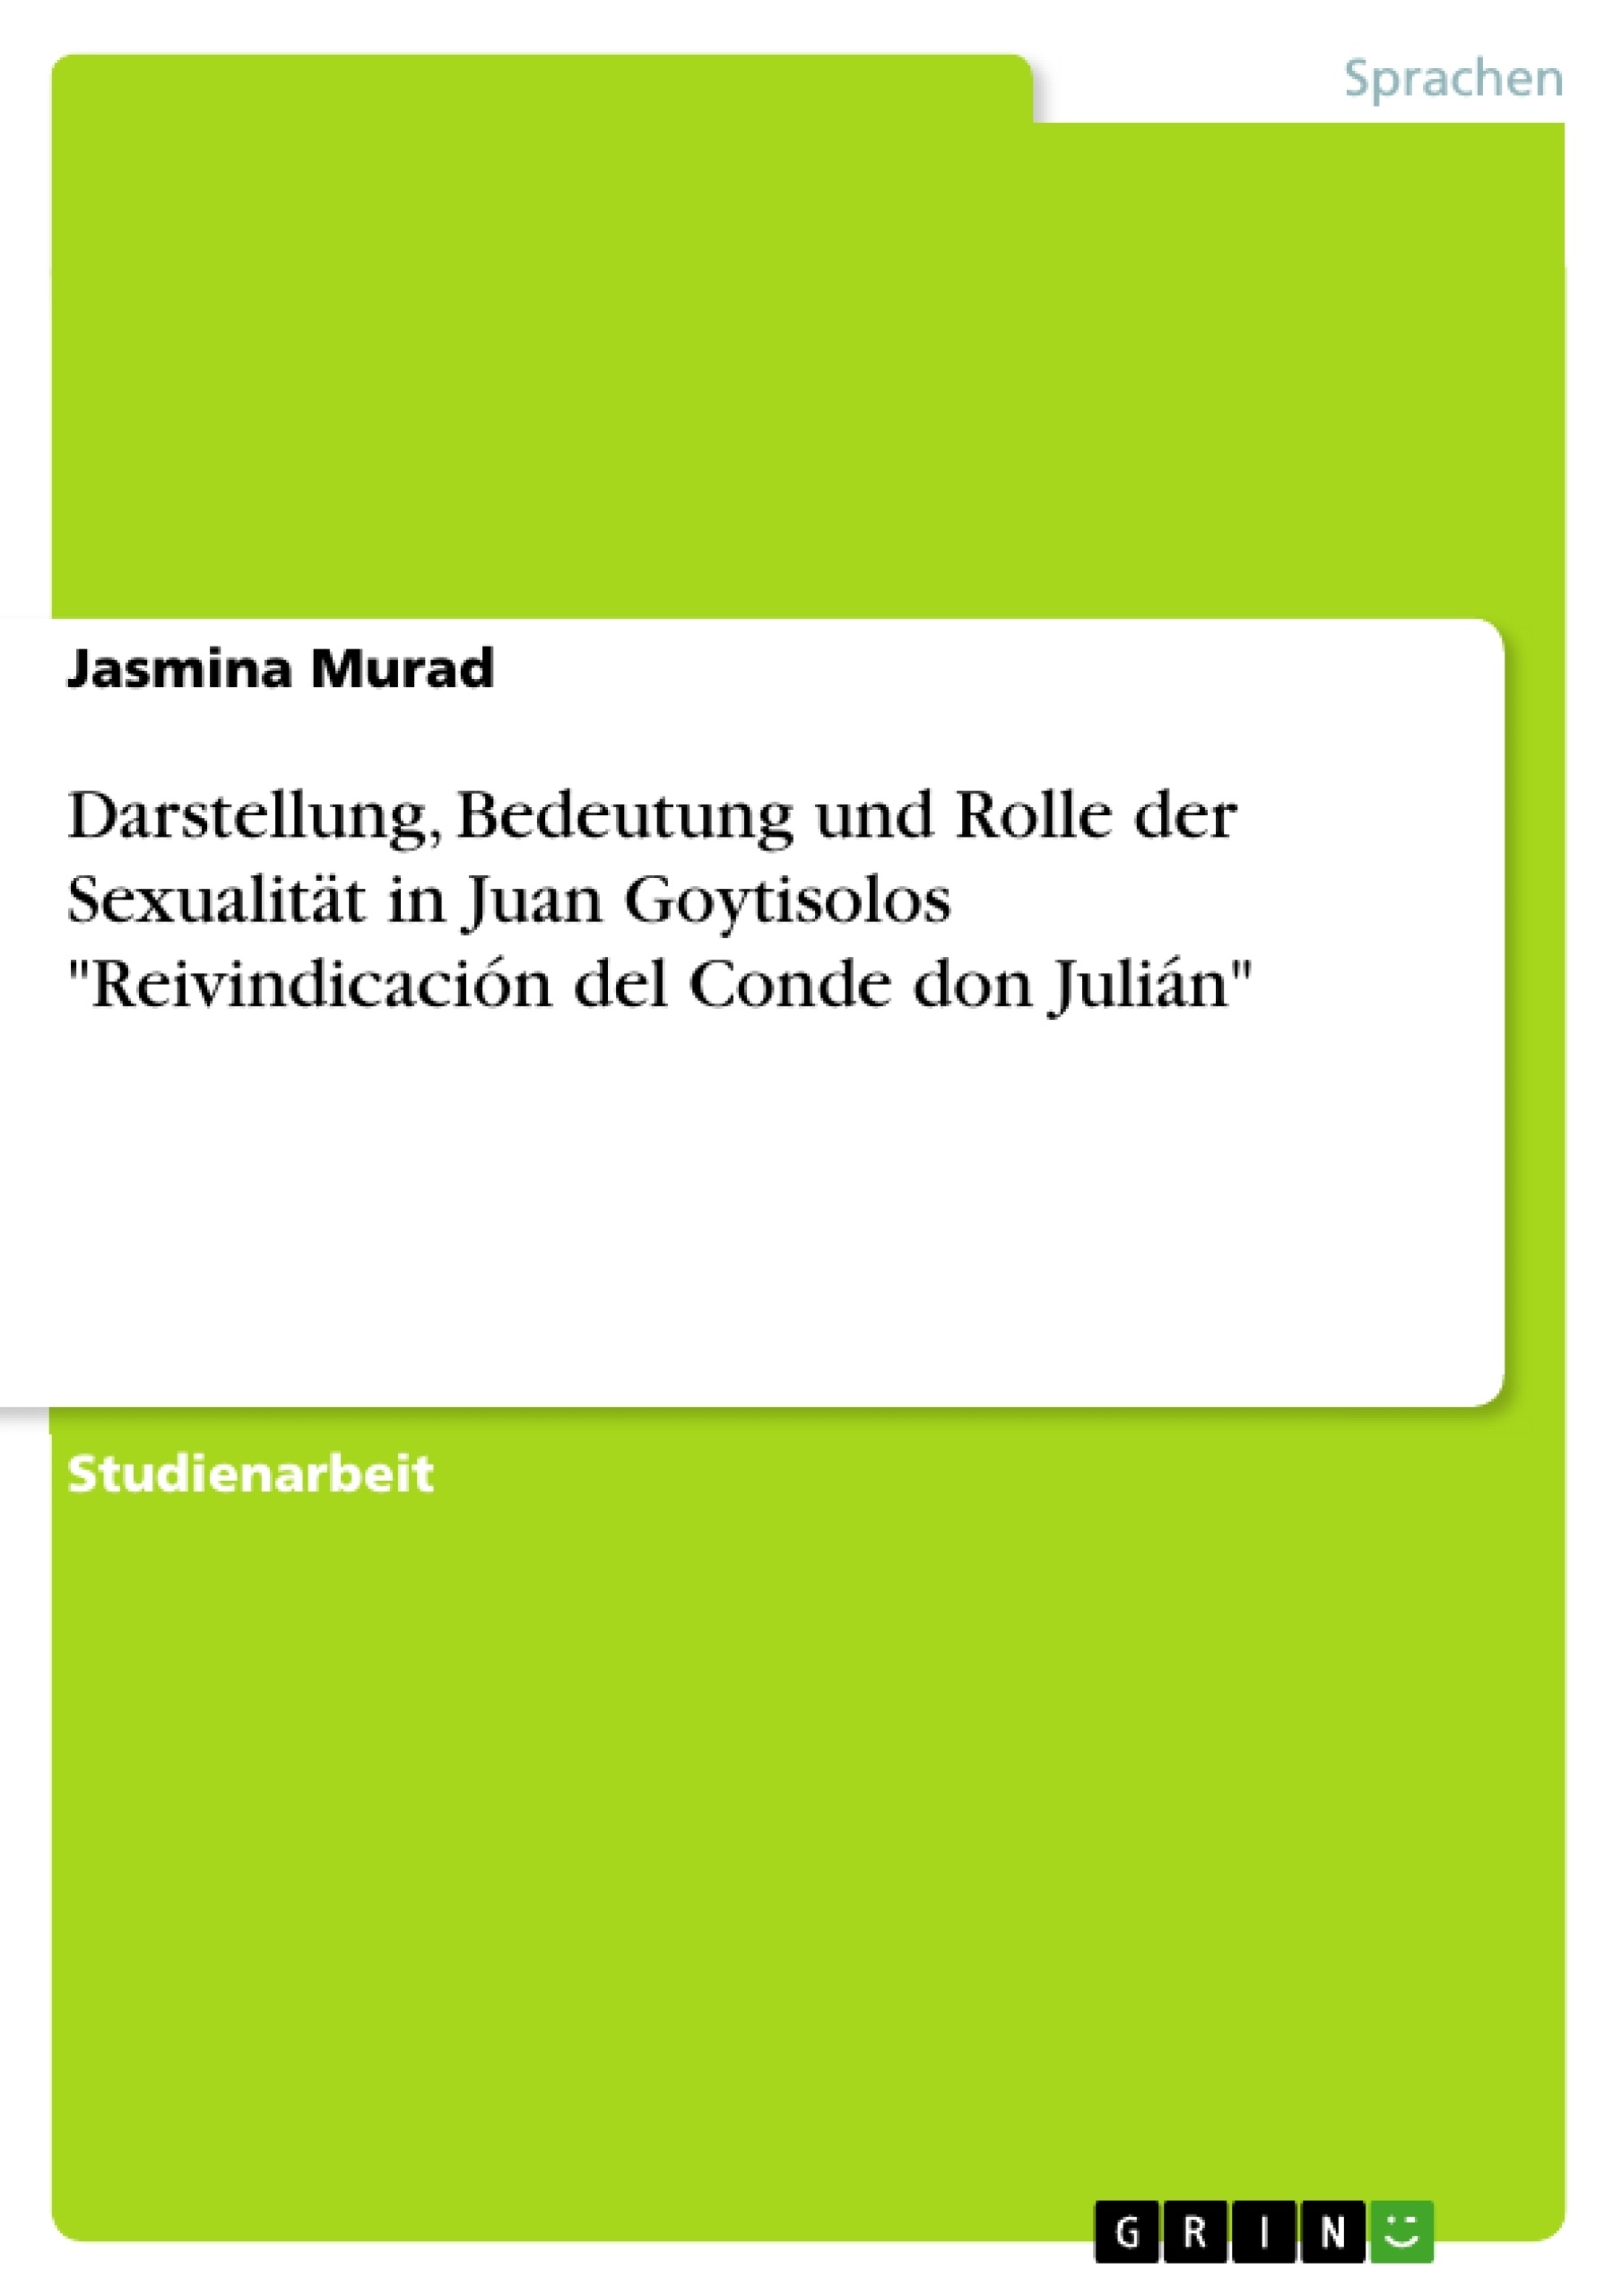 Titel: Darstellung, Bedeutung und Rolle der Sexualität in Juan Goytisolos "Reivindicación del Conde don Julián"